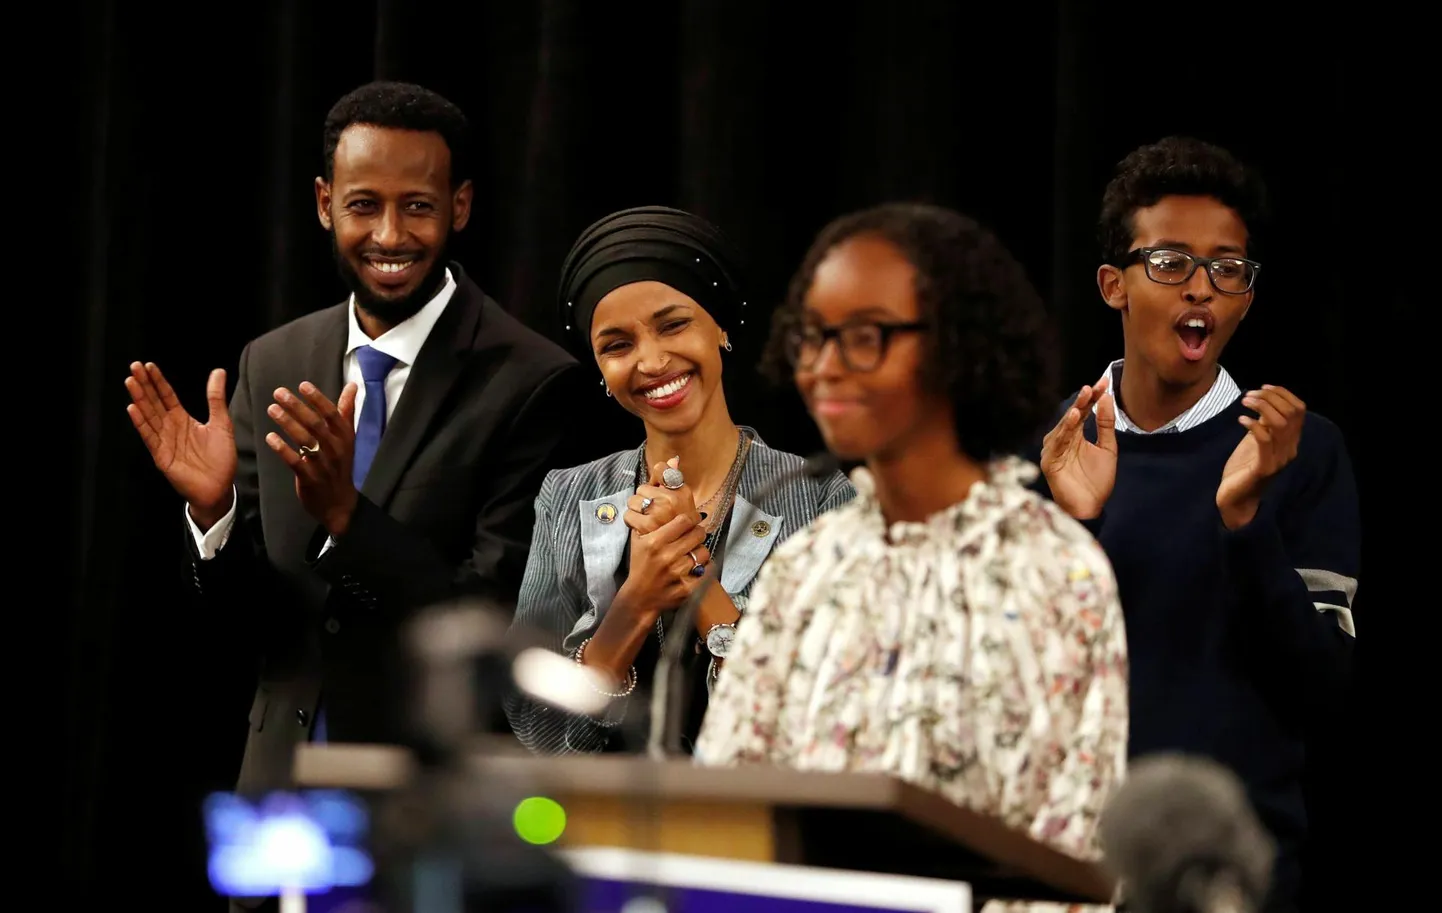 Isra Hirsi pidamas 2018. aastal kõnet oma ema Ilhan Omari valimiskampaanial.